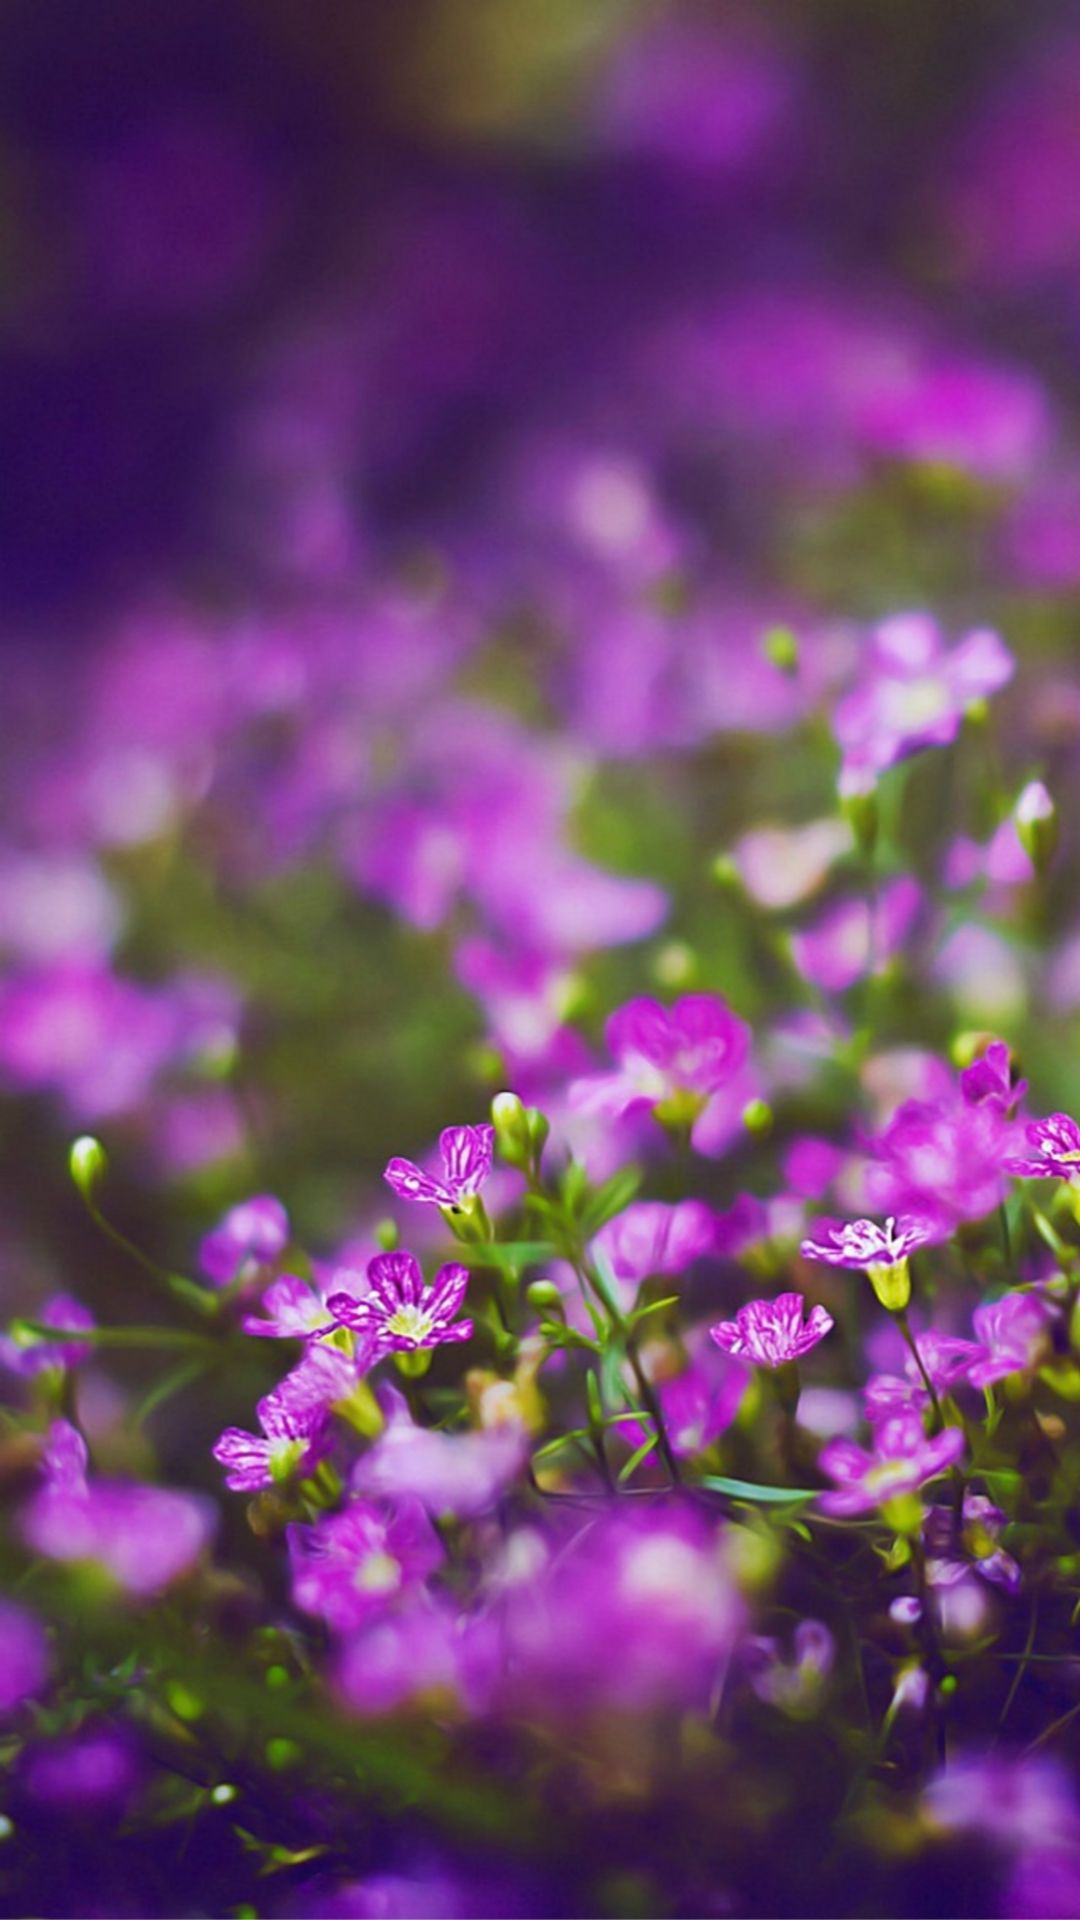 Beautiful Purple Flower Field Blur Bokeh iPhone 8 Wallpaper Free